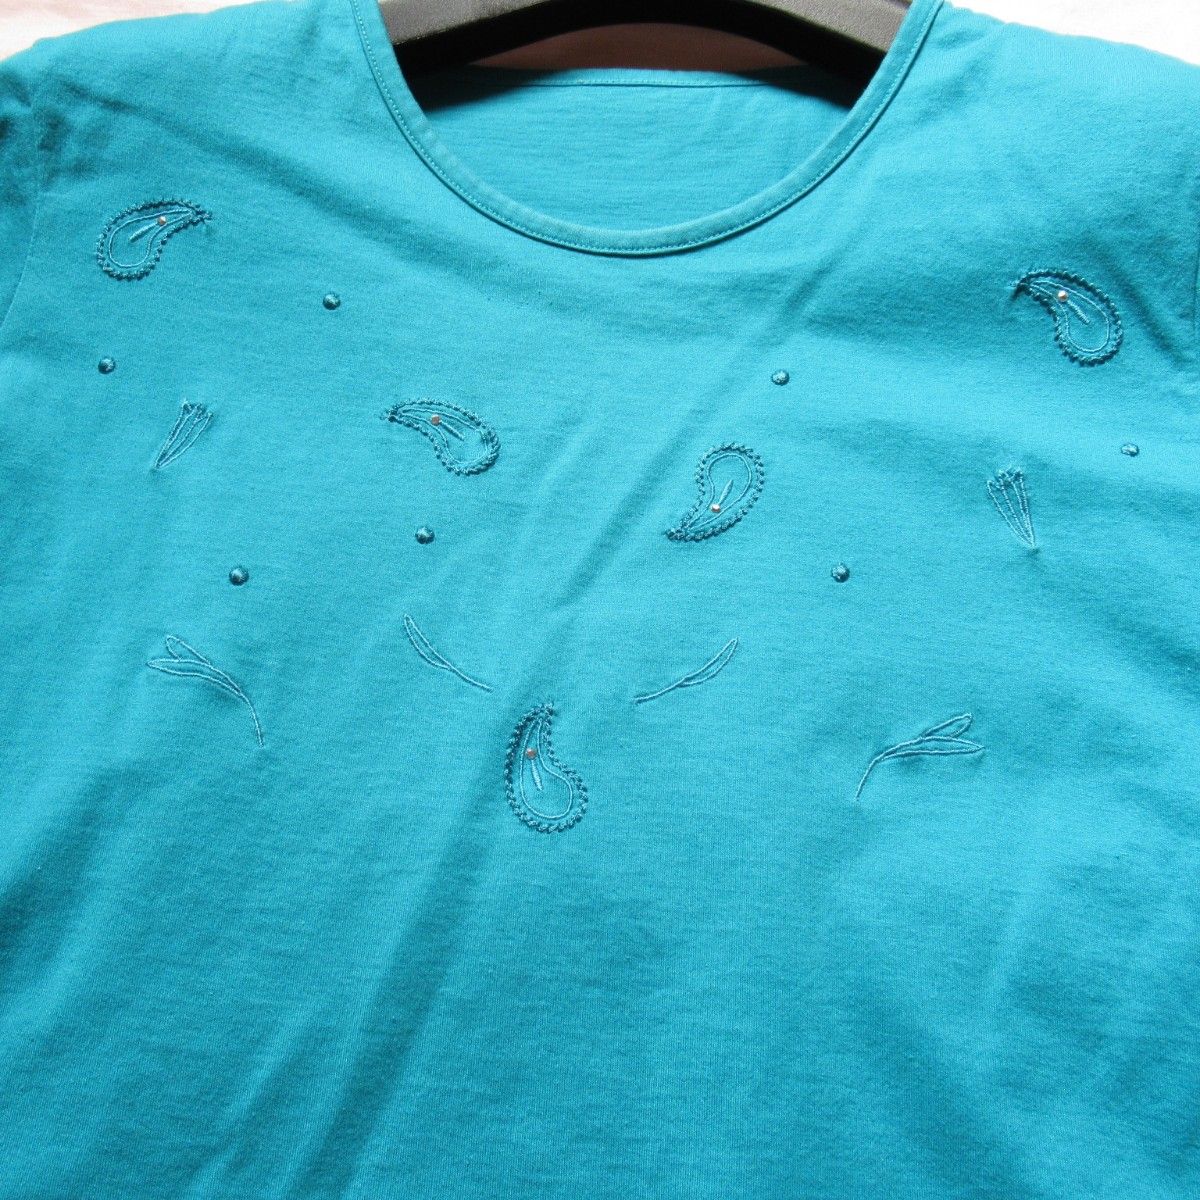 半袖Tシャツ ターコイズブルー Mサイズくらい ペイズリー柄 刺繍 肩パッド 綿100% トップス カットソー レディース 